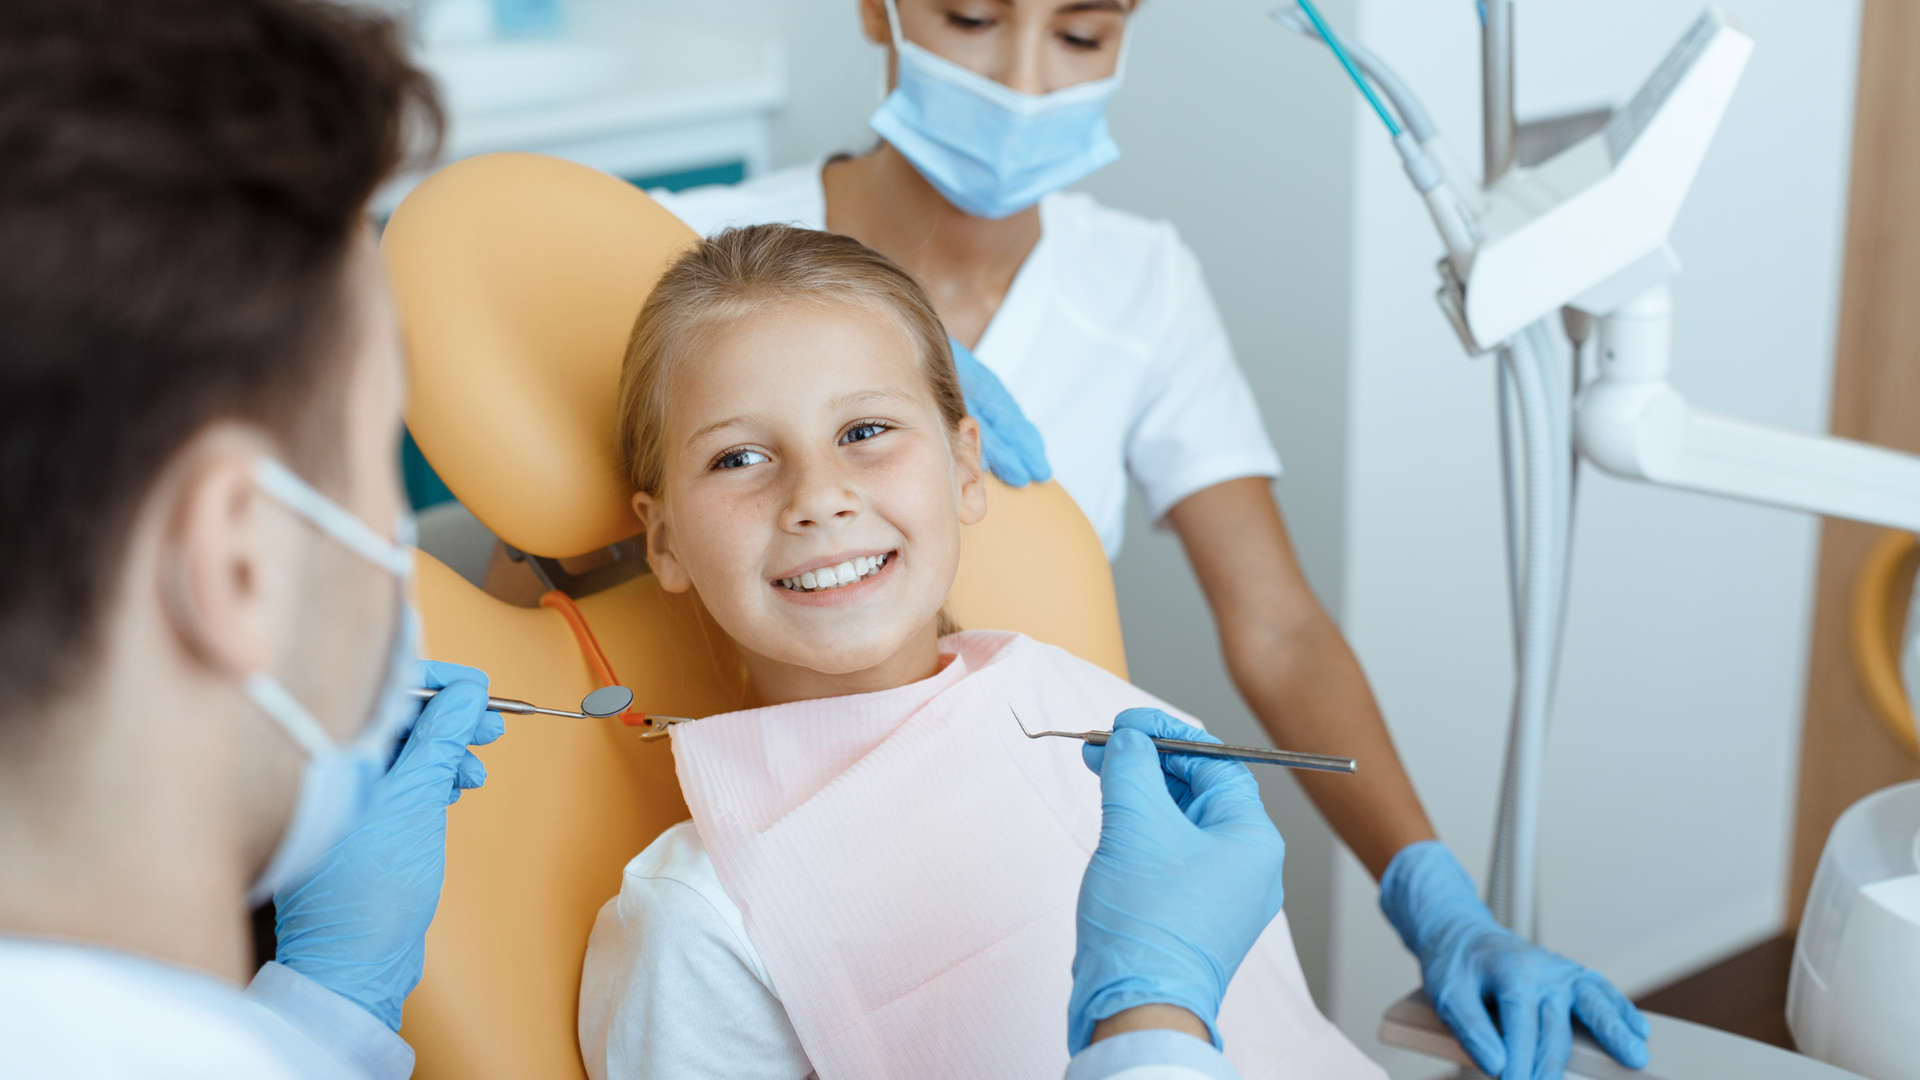 Kids Dentist Checkup